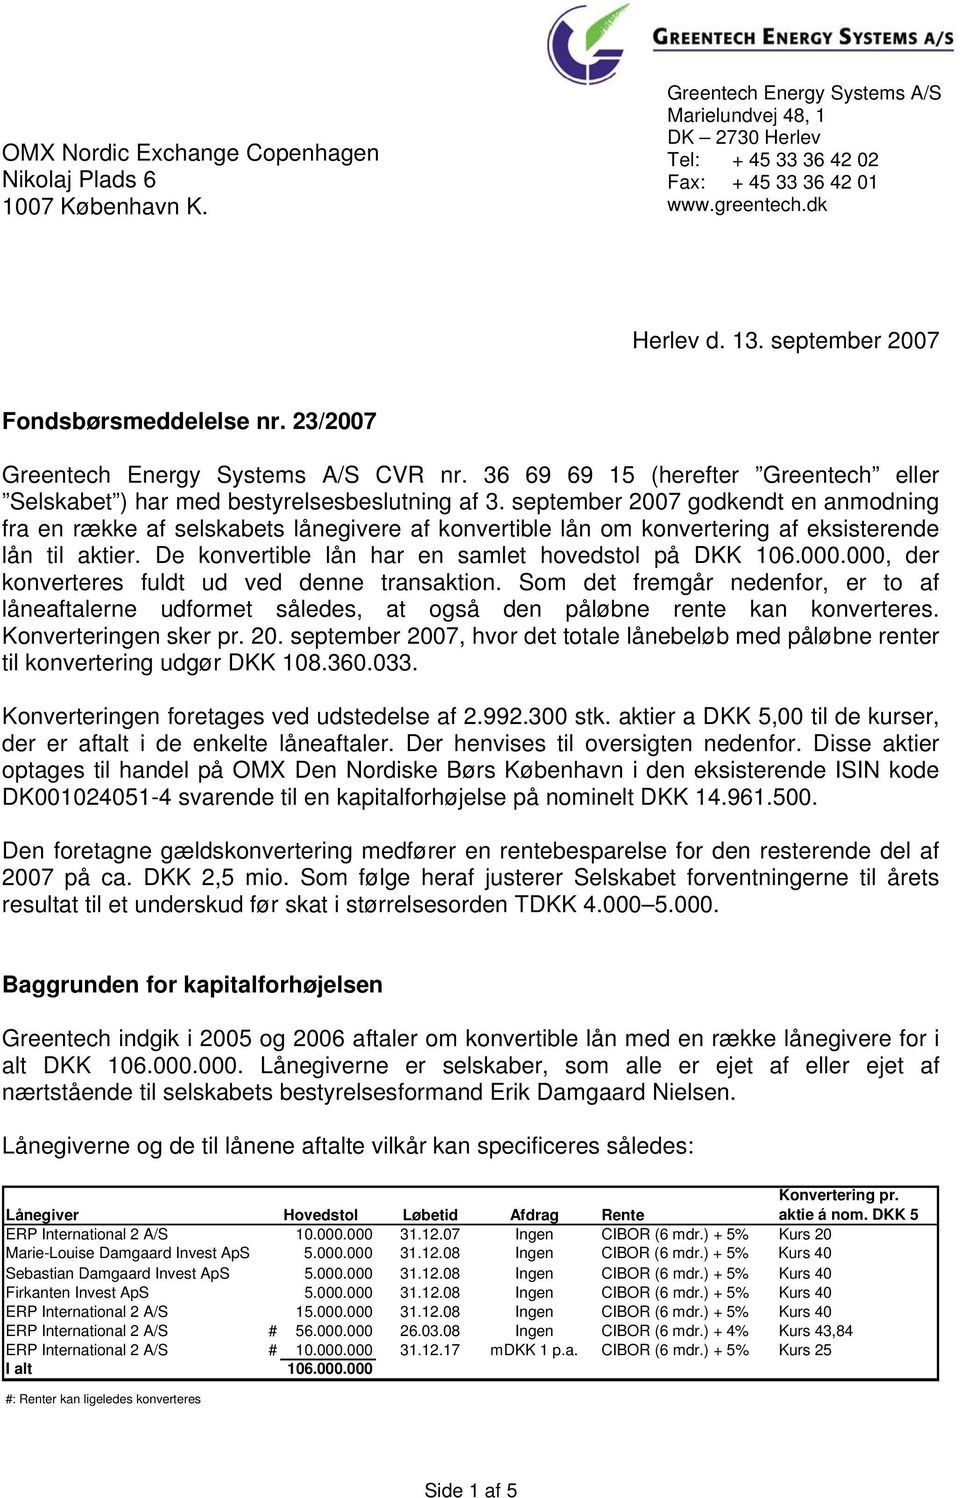 september 2007 godkendt en anmodning fra en række af selskabets lånegivere af konvertible lån om konvertering af eksisterende lån til aktier. De konvertible lån har en samlet hovedstol på DKK 106.000.